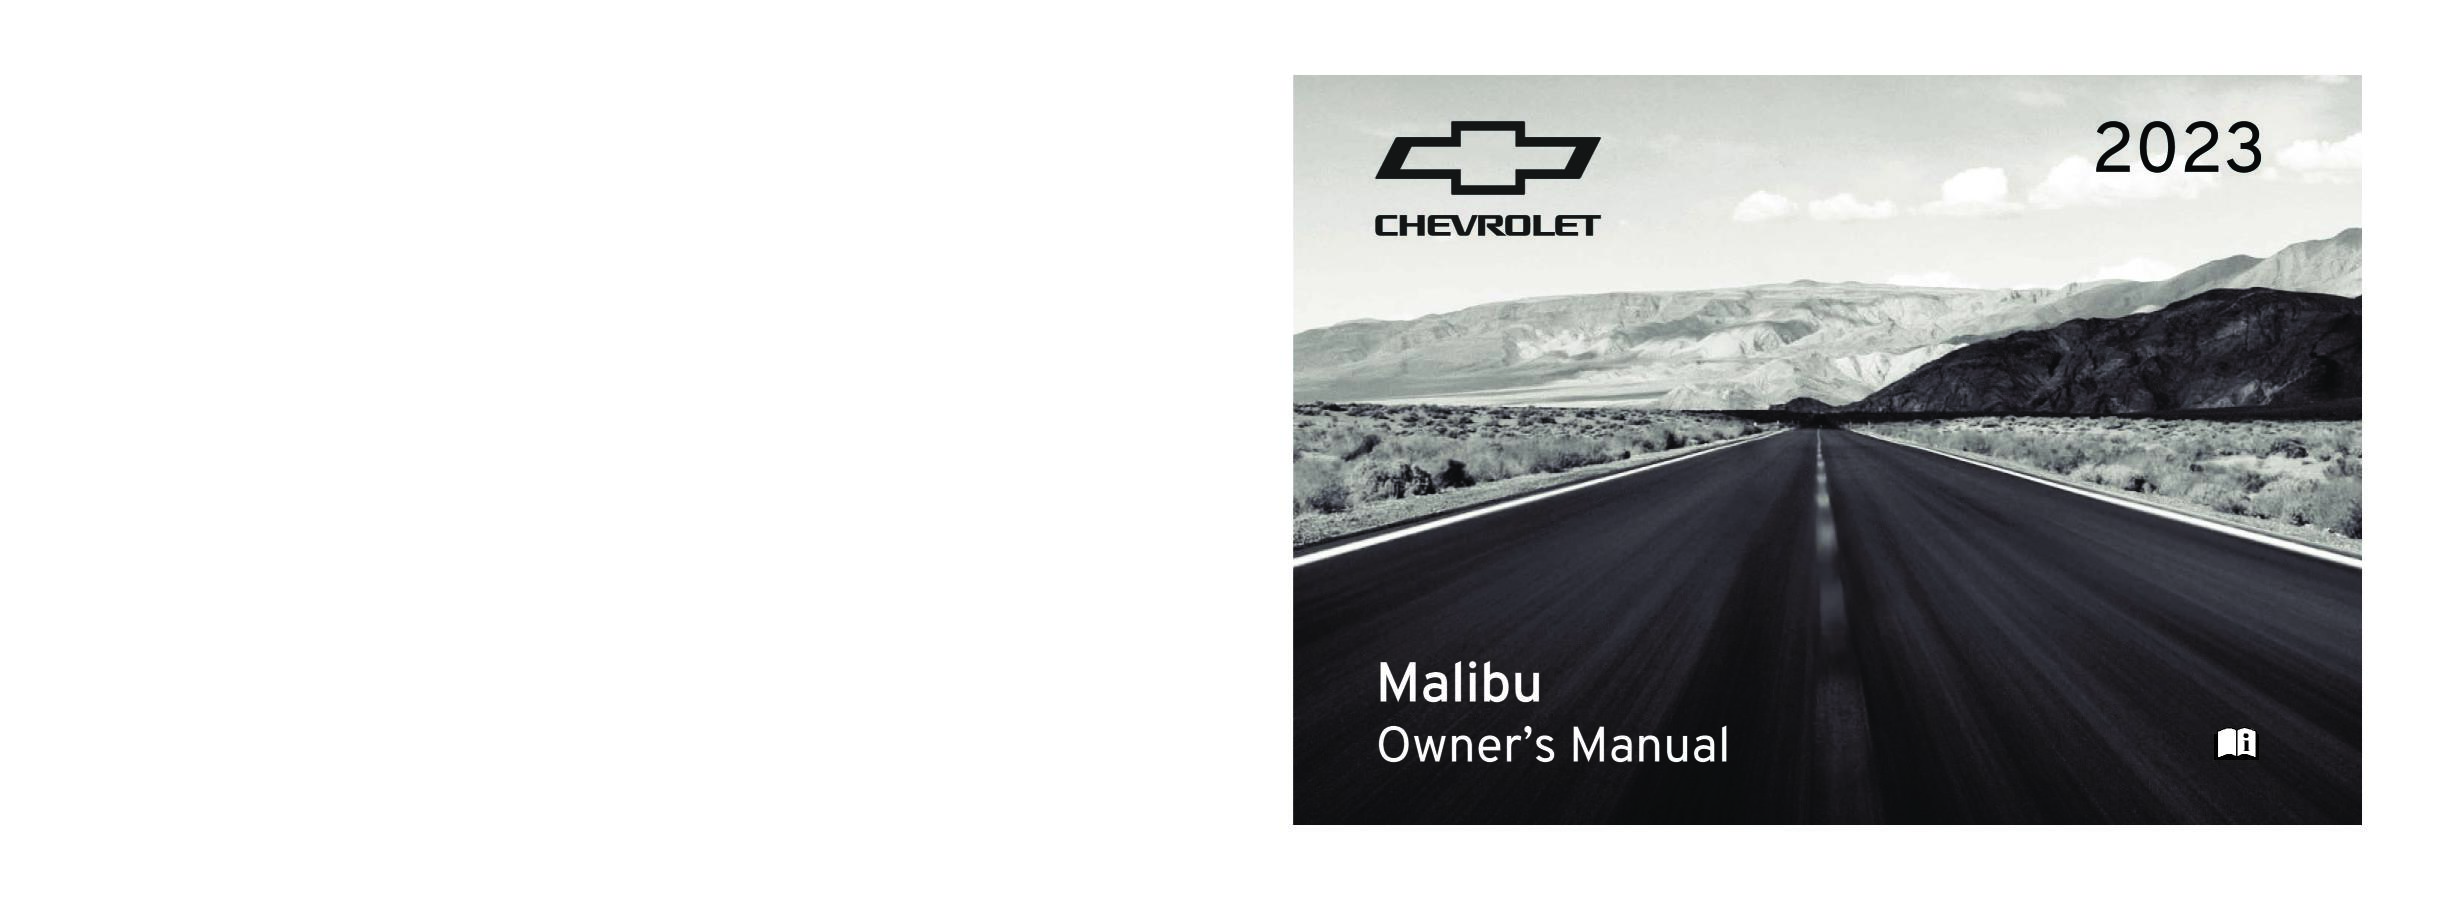 2023 Chevrolet Malibu Owner's Manual